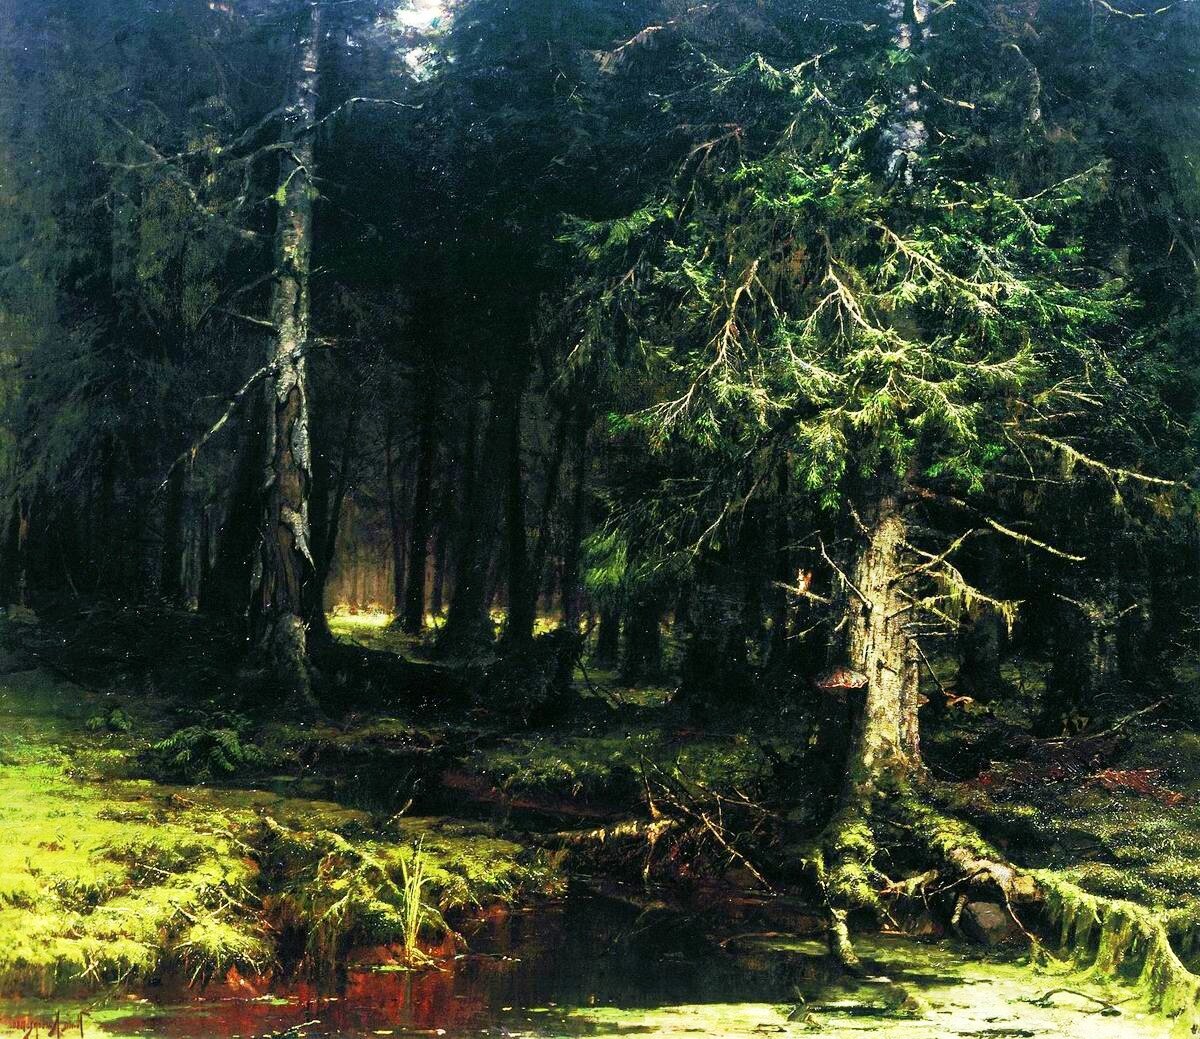 "Девственный лес", 1880, холст, масло,141×155